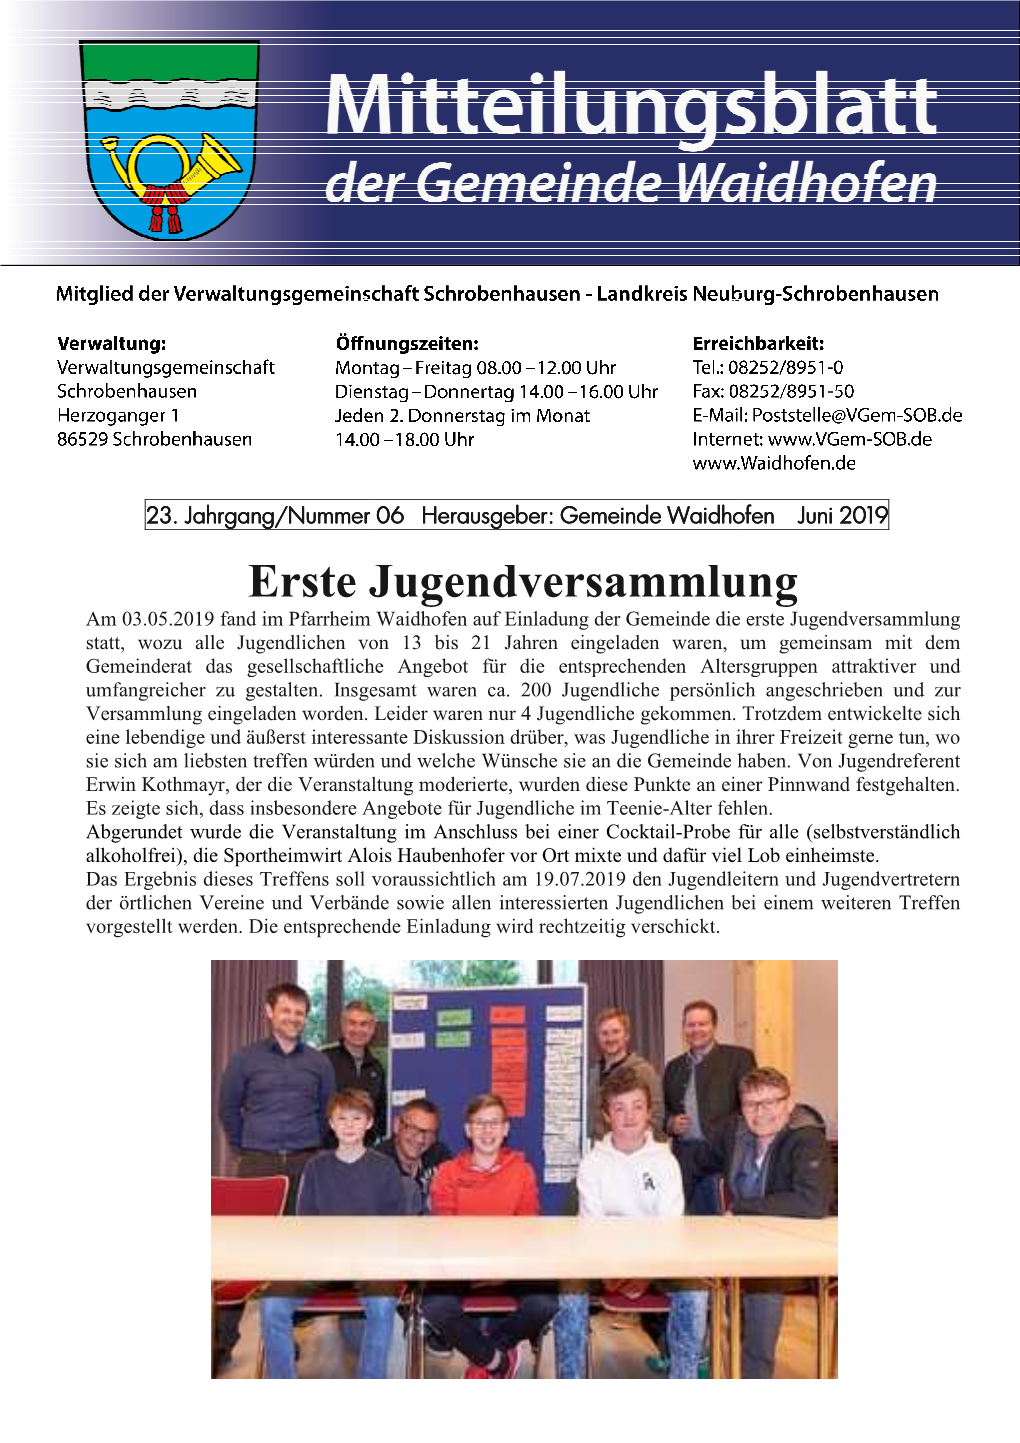 Mitteilungsblatt Waidhofen Nr. 6/2019